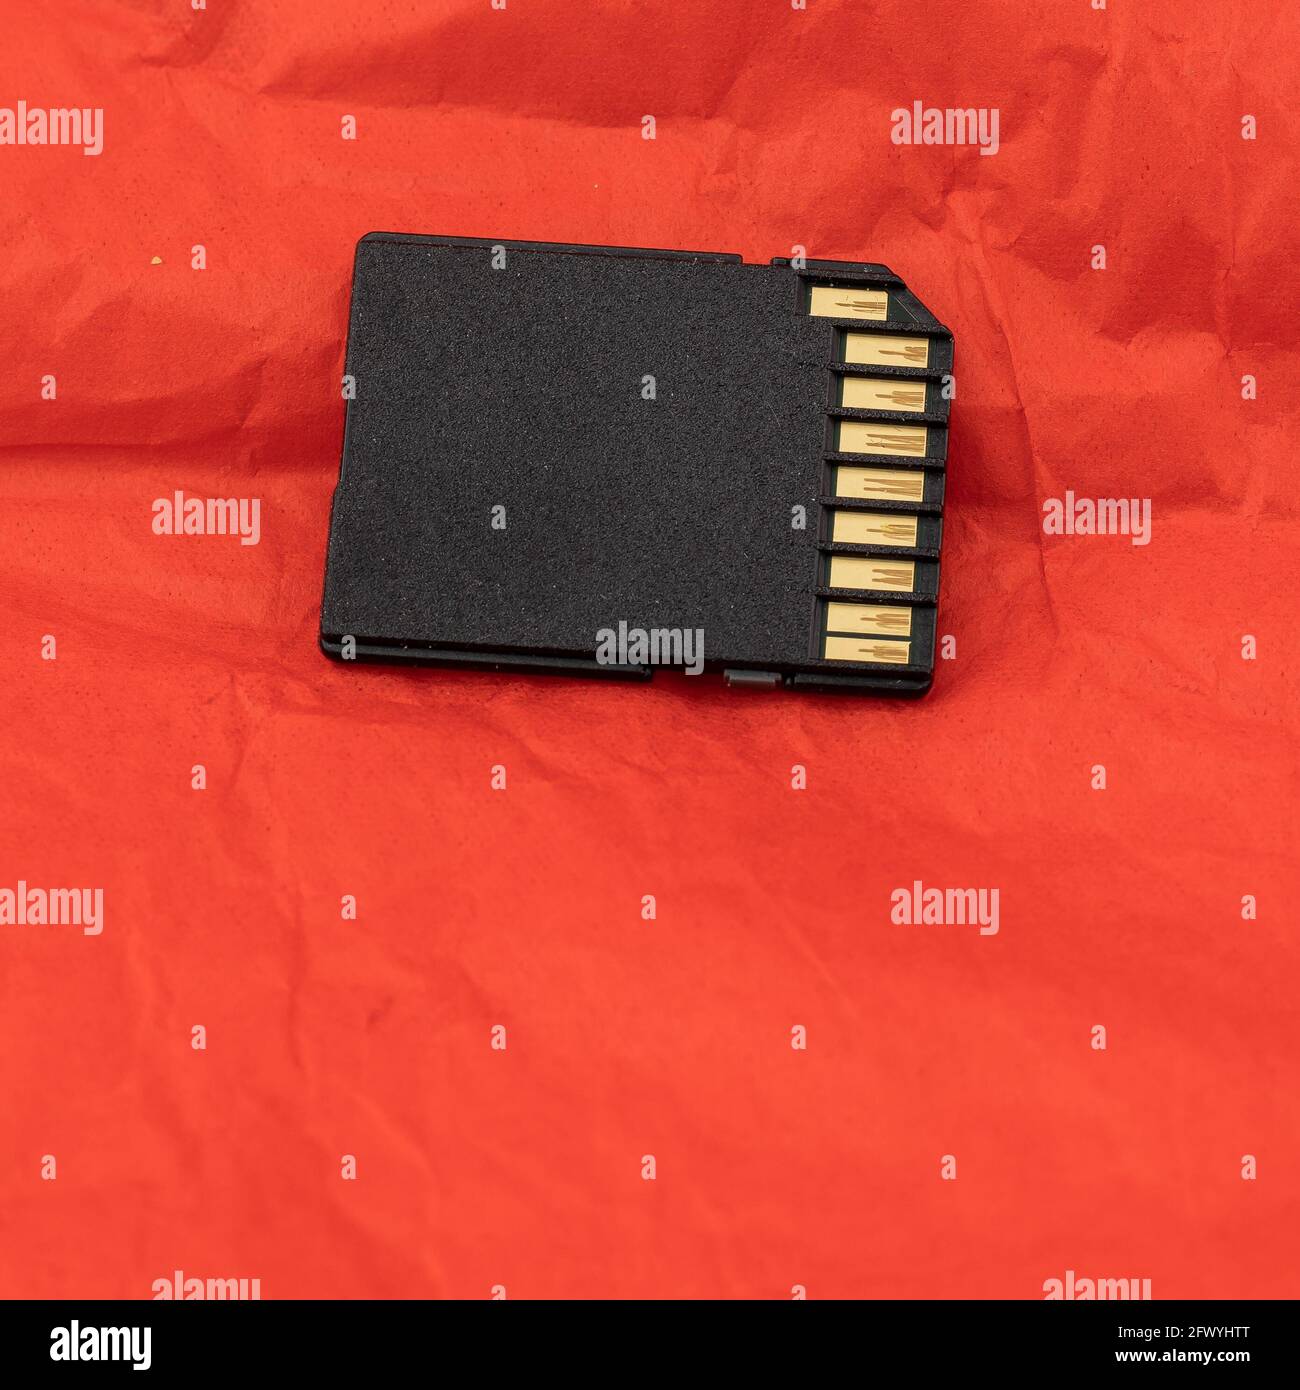 scheda sd, dispositivo di archiviazione, dispositivo fotocamera, su sfondo arancione Foto Stock